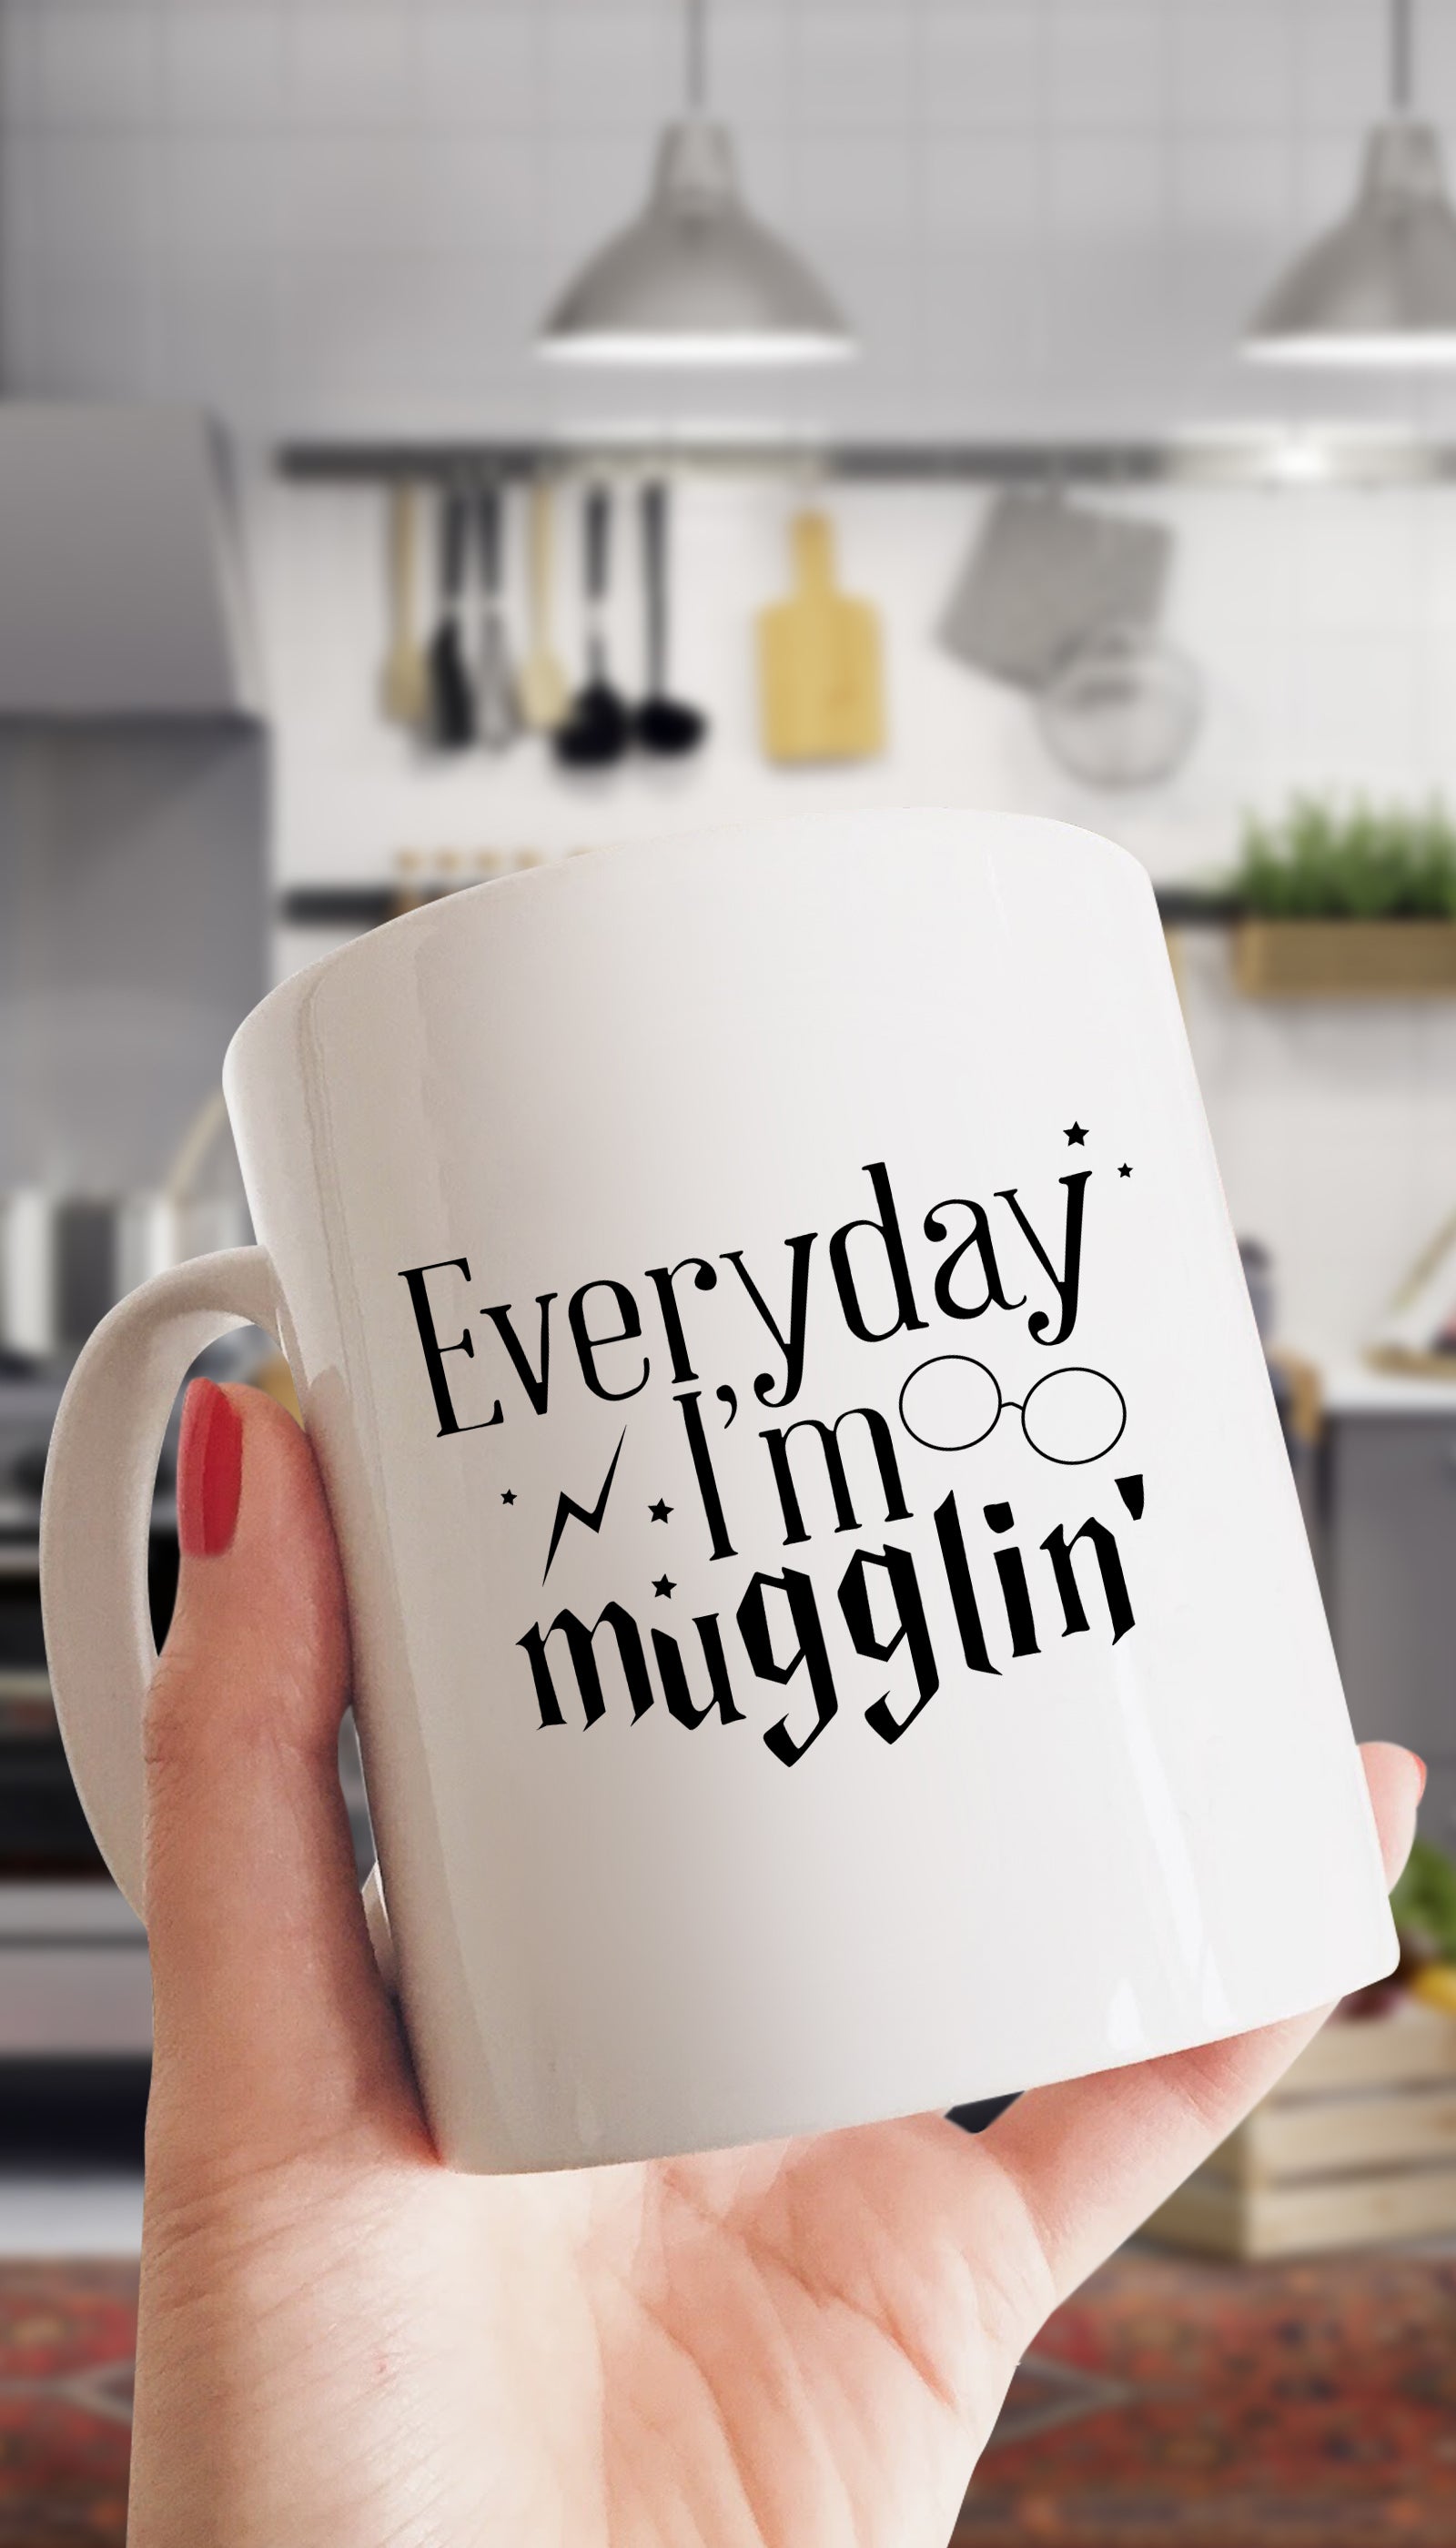 Everyday I'm Mugglin White Mug | Sarcastic ME